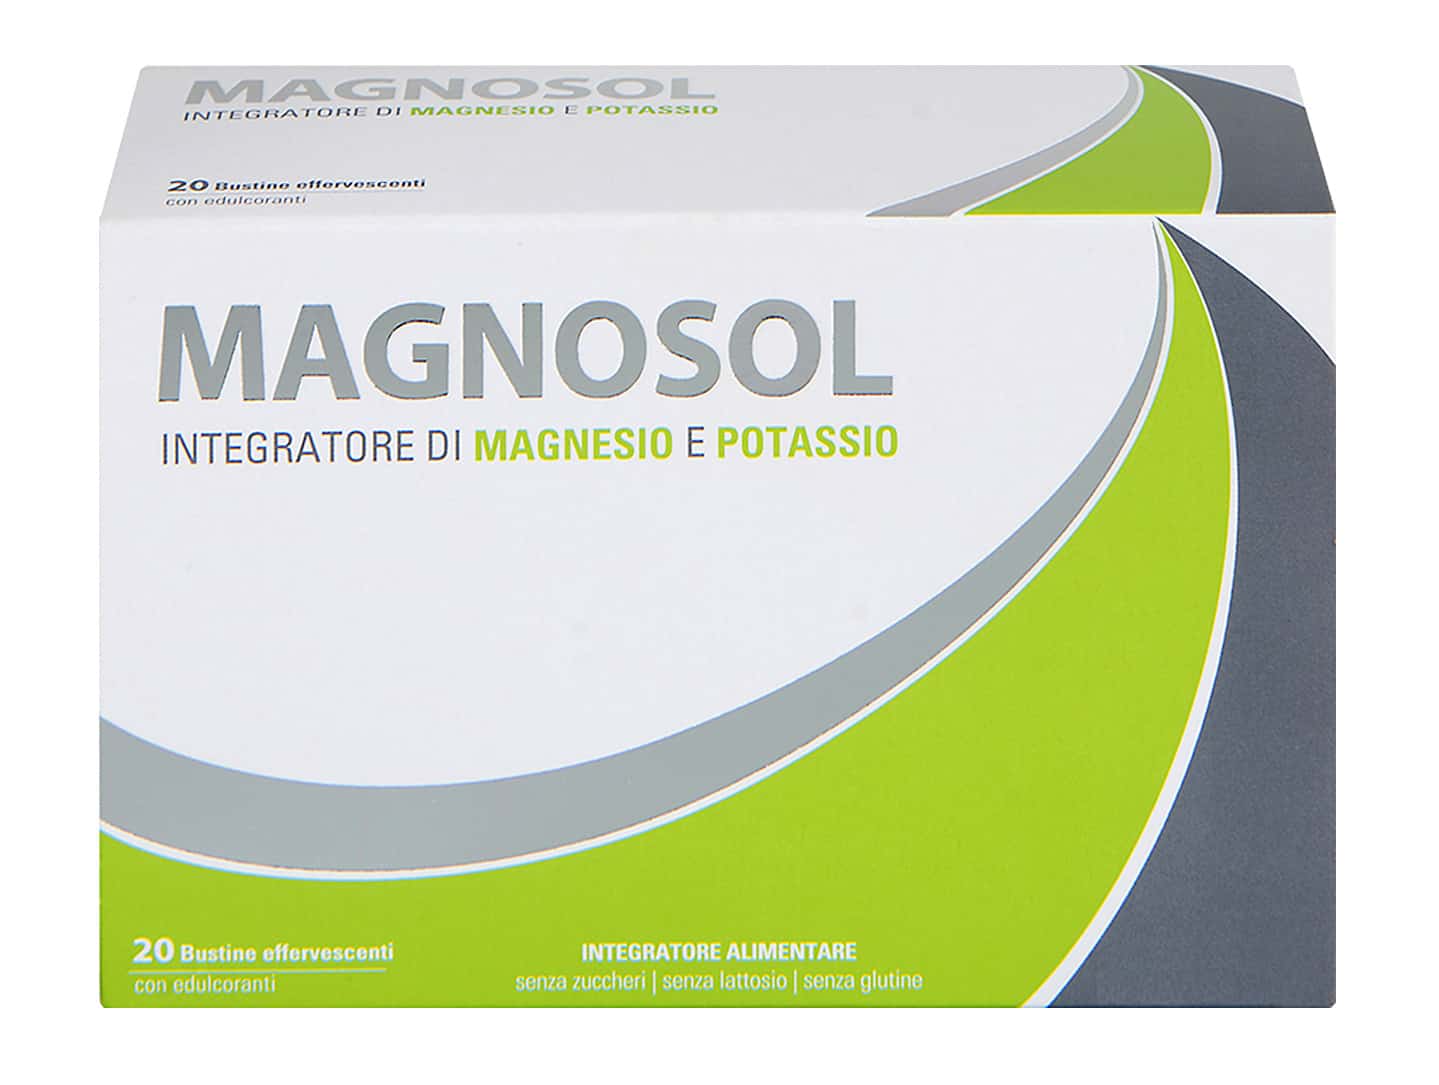 MAGNOSOL di Mylan, un aiuto efficace per reintegrare potassio e magnesio nel sangue